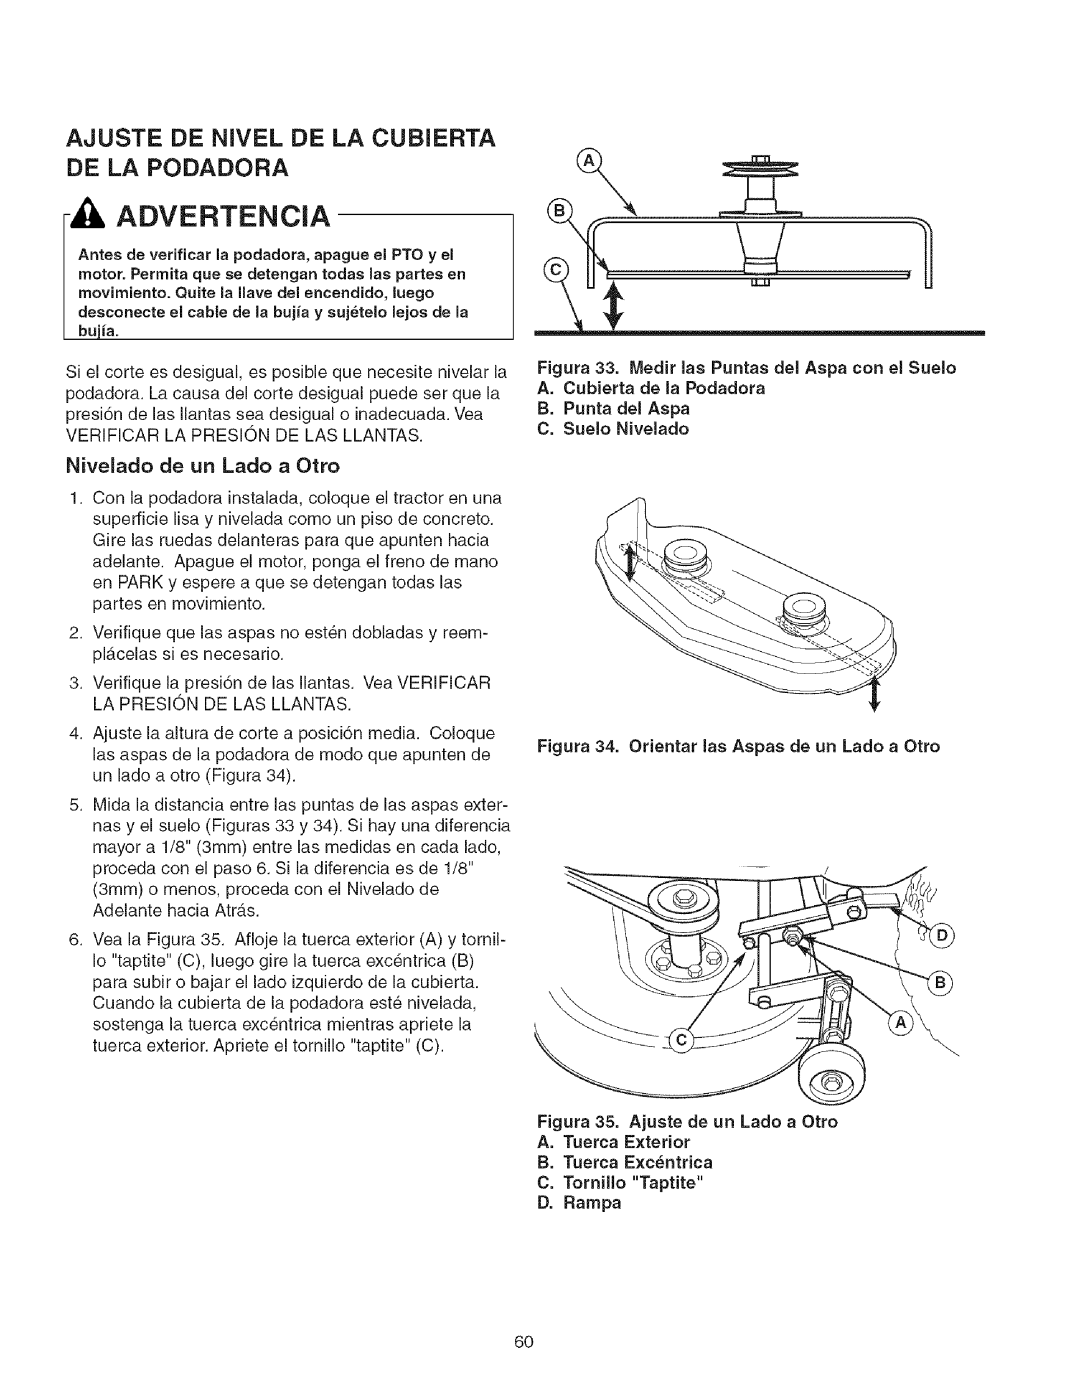 Craftsman 107.27768 manual Ajuste De Nivel De La Cubierta De La Podadora, Advertencia, Nivelado de un Lado a Otto 